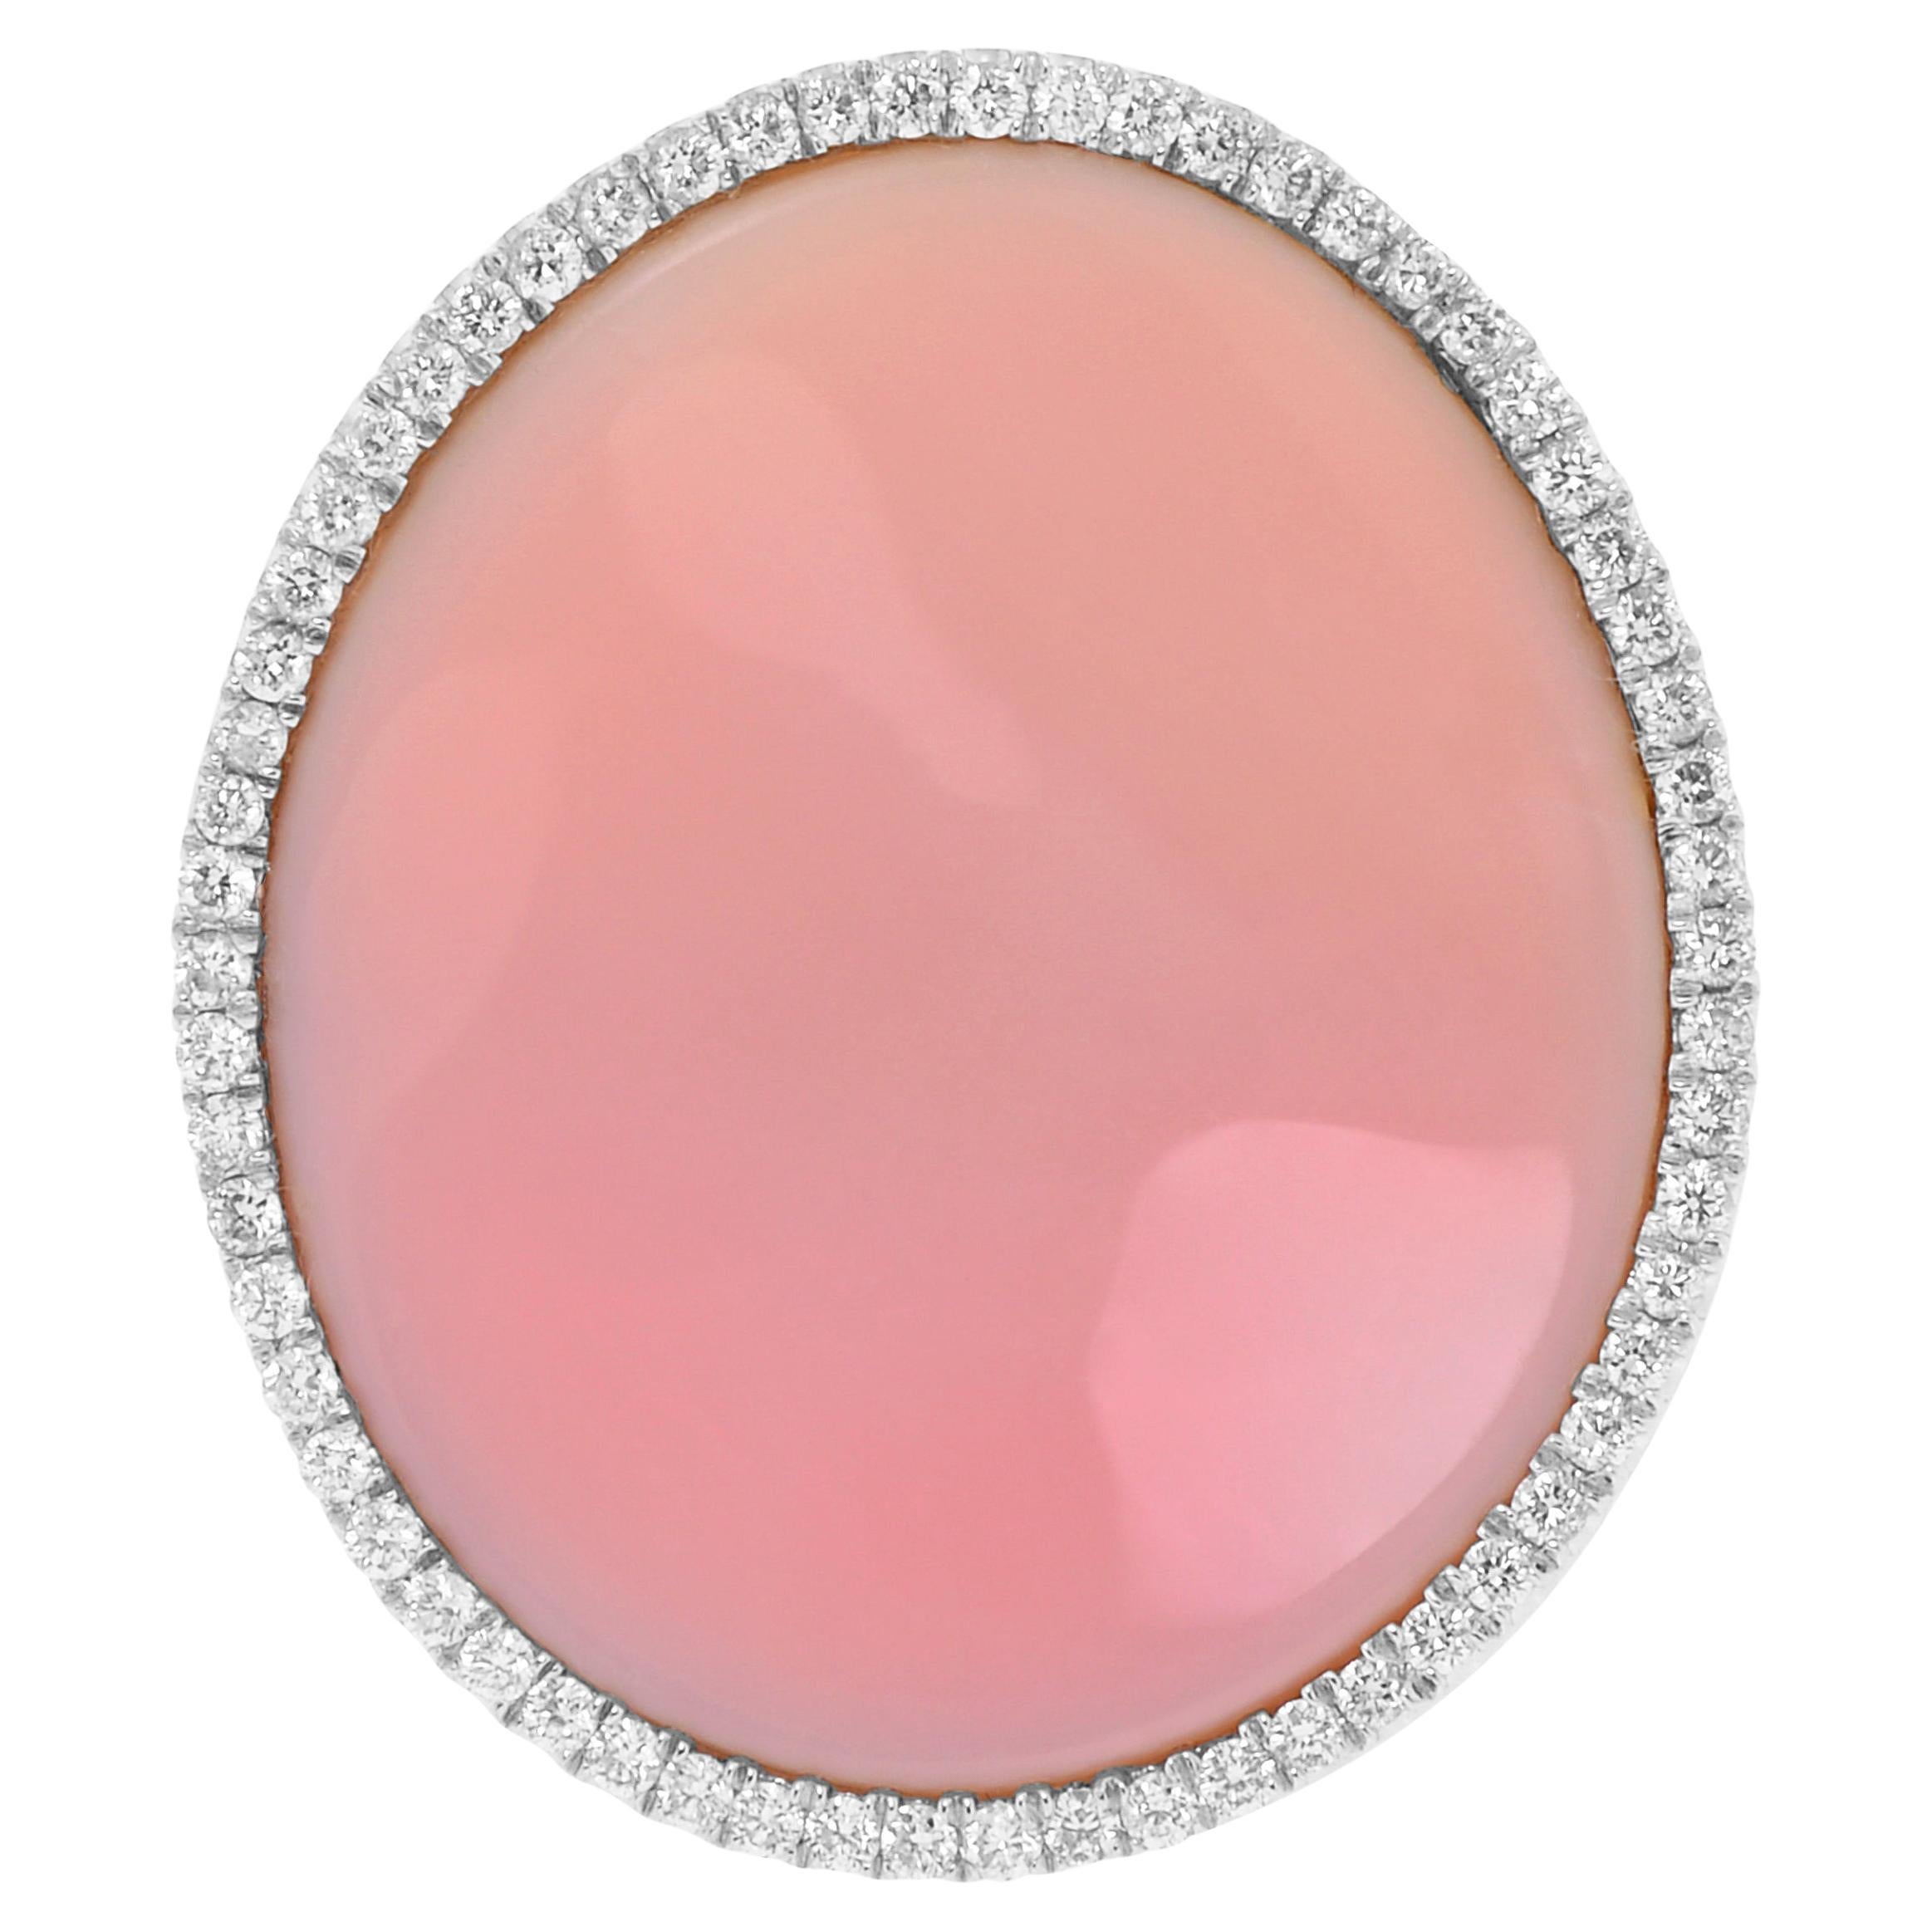 Mimi Milano, bague fantaisie Aurora en or blanc 18 carats, nacre et diamants, taille 6